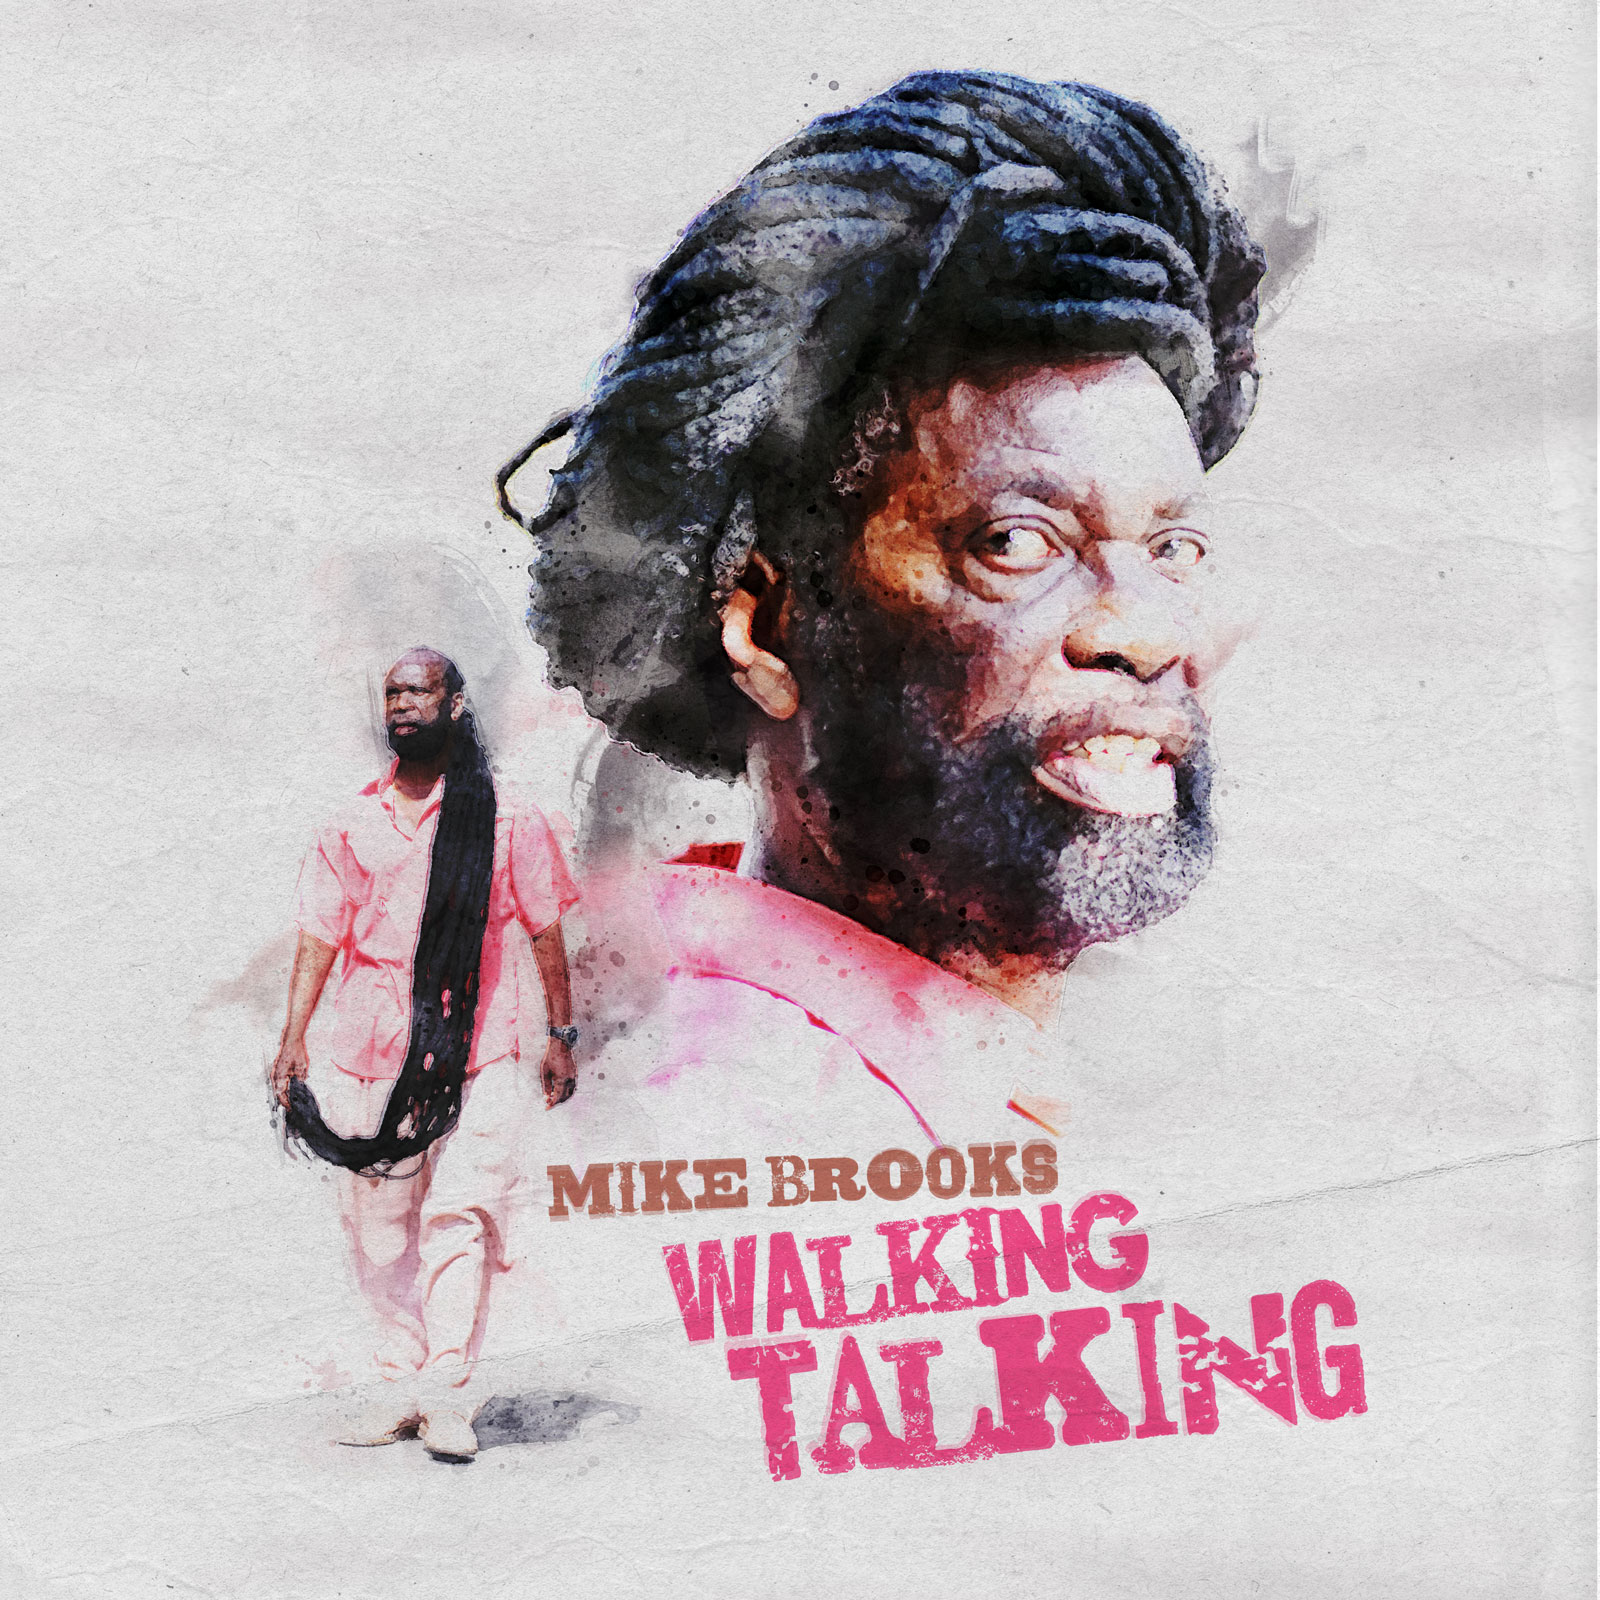 Mike Brooks: ‘Walking Talking’